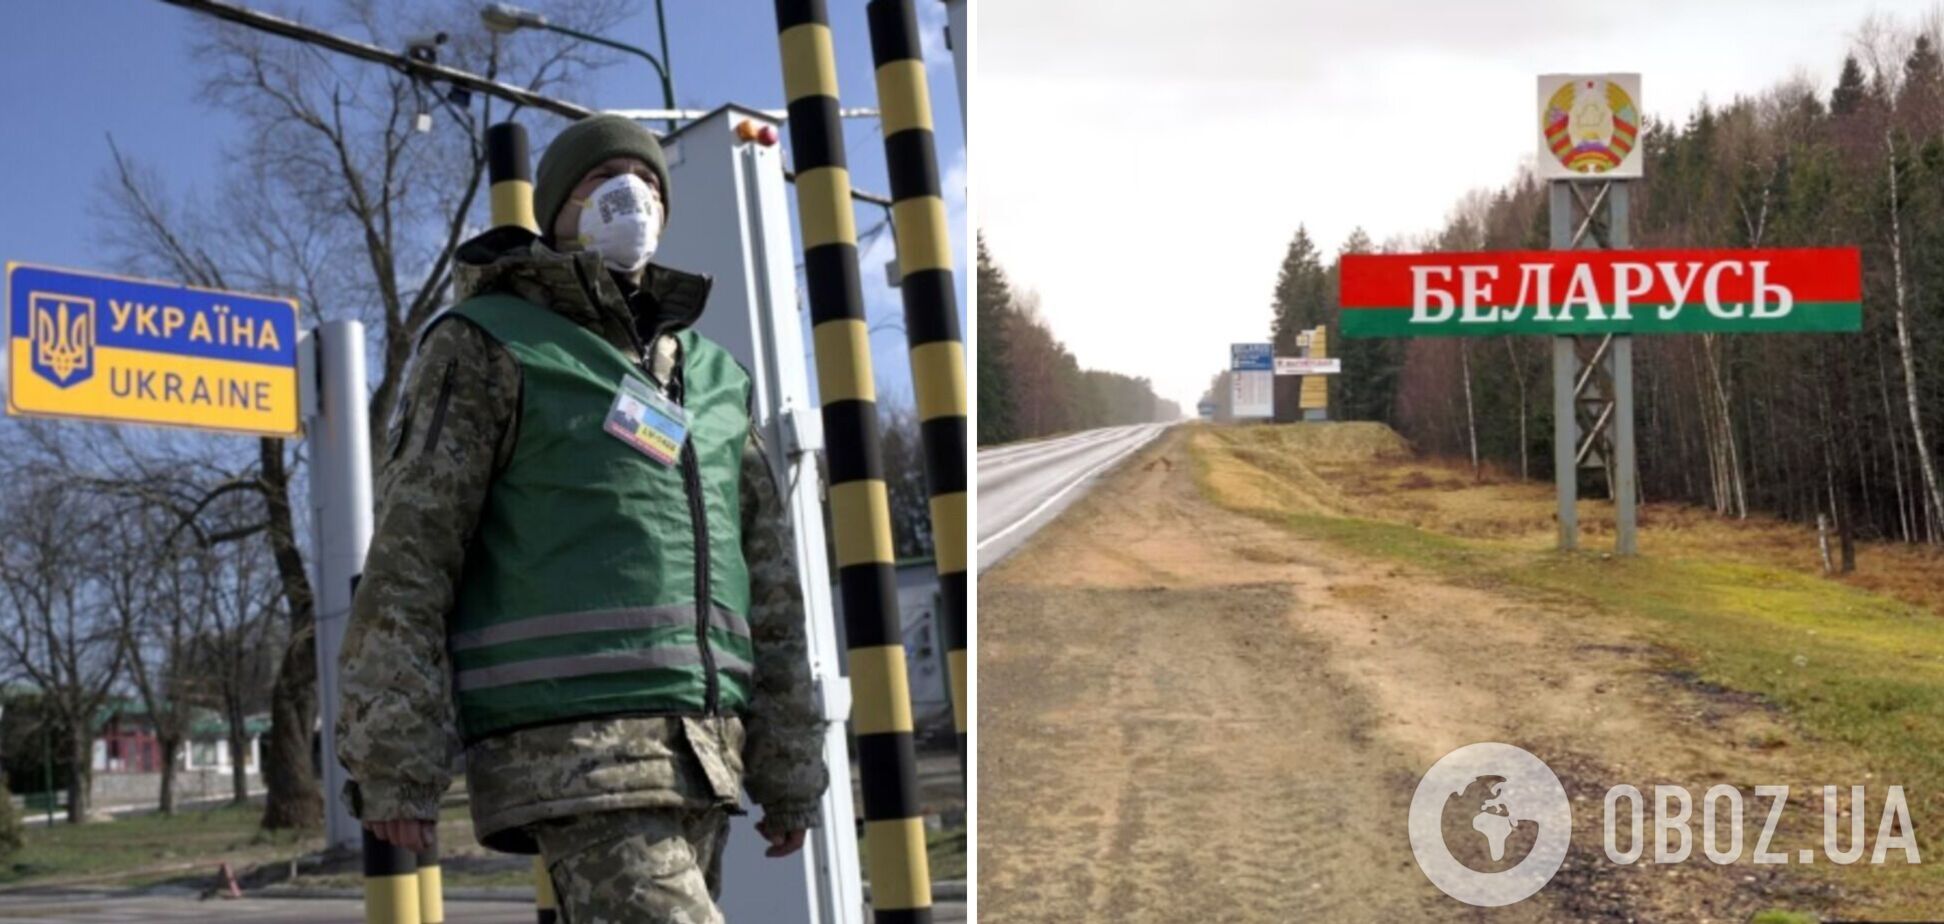 В Беларуси заявили об угрозе со стороны Украины и риске провокаций